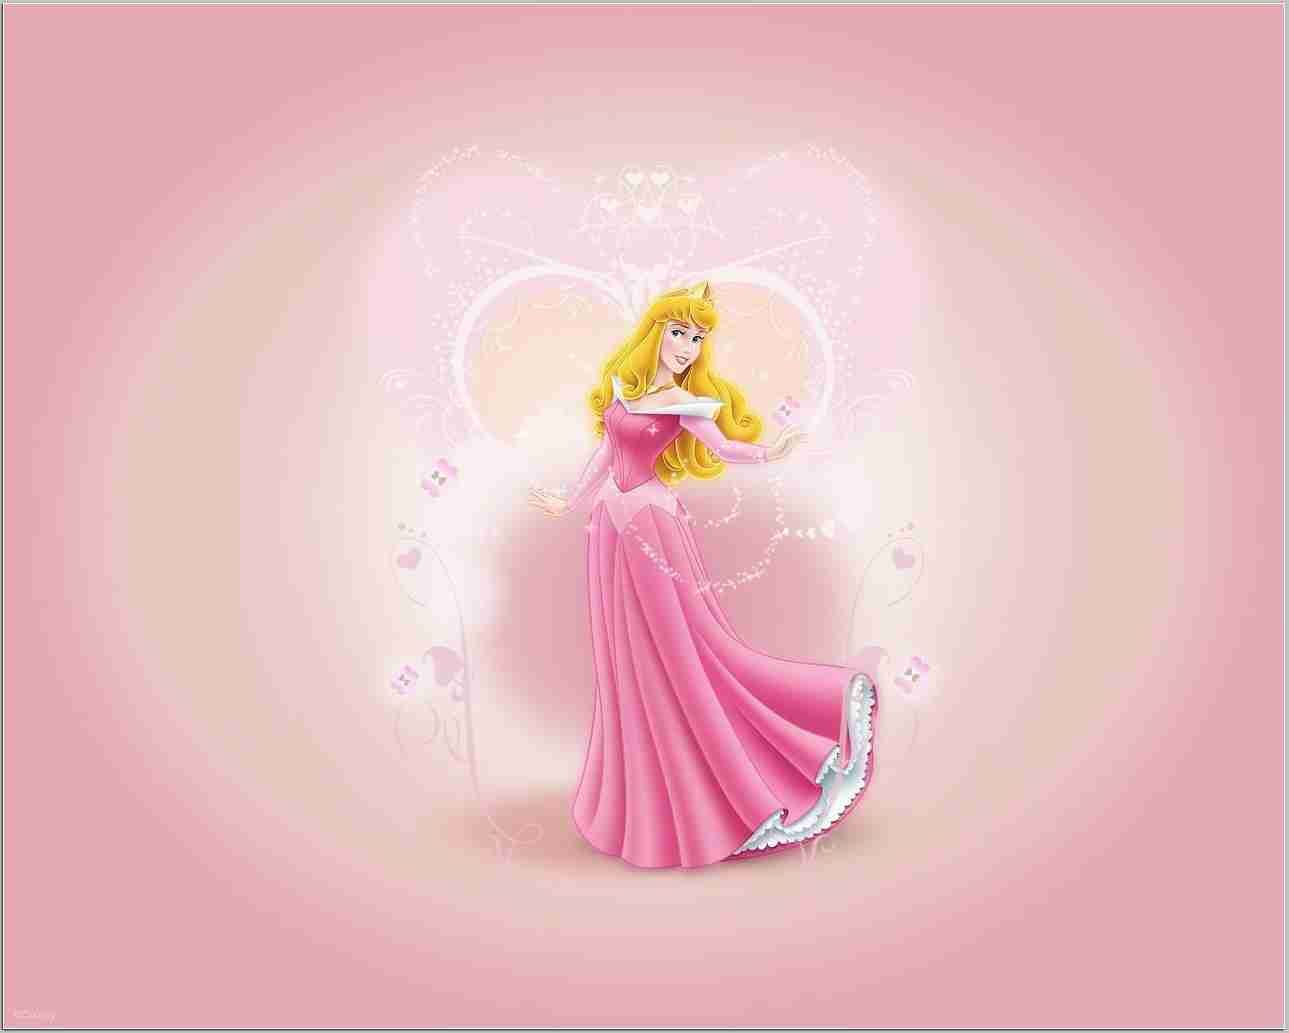 Los mejores 18 fondos de pantalla de princesas de disney descargar gratis - PicsBroker.com